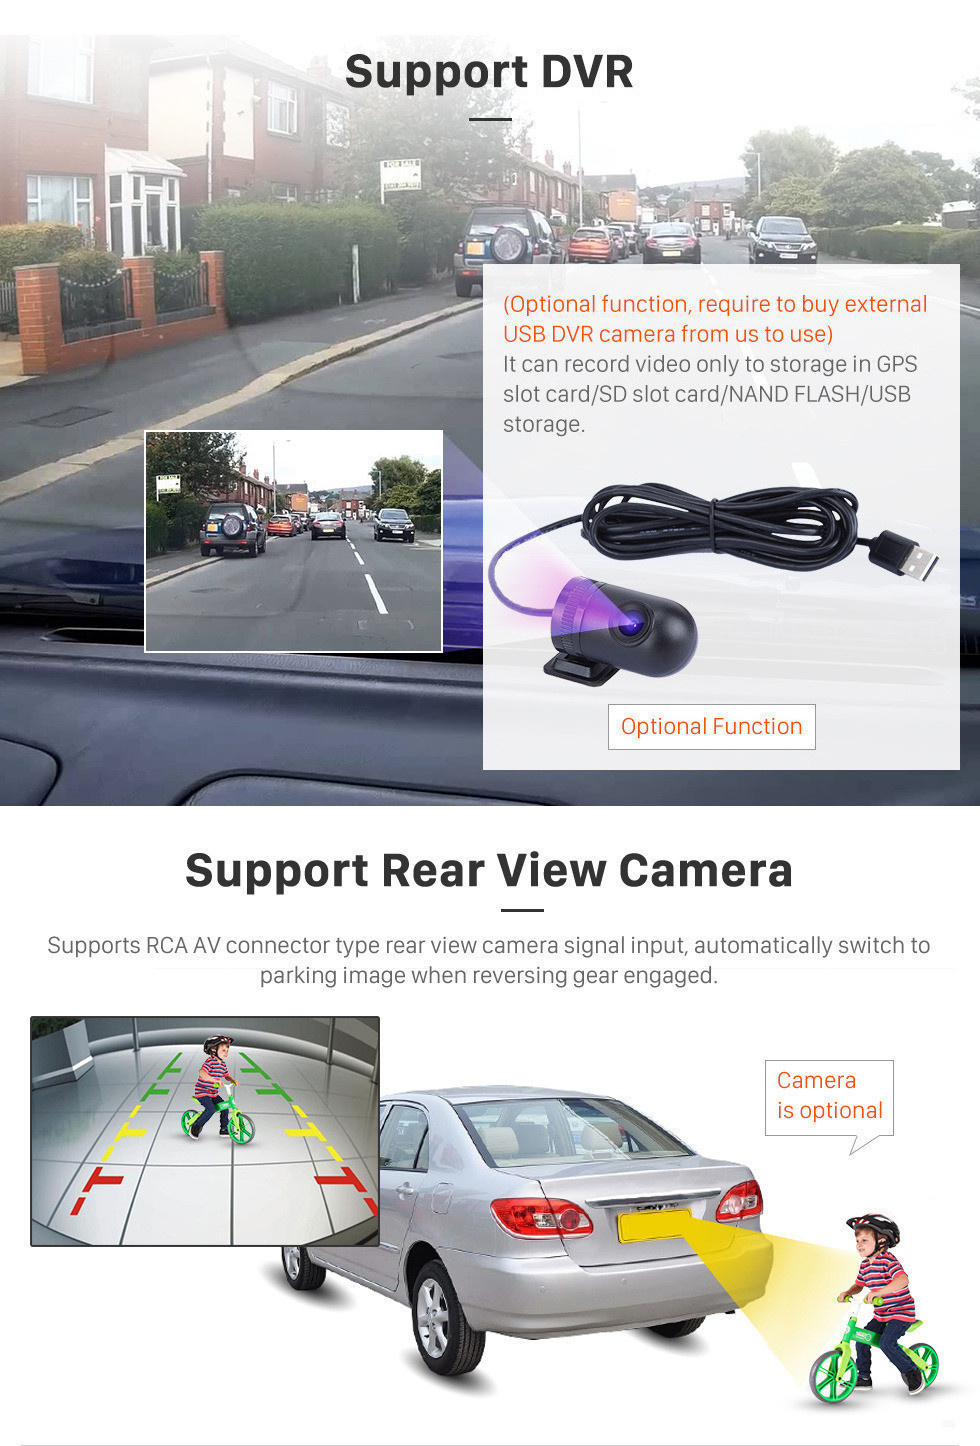 Seicane 9 Zoll 2016 Jeep RENEGADE HD-Touchscreen Android 13.0 Radio GPS-Navigationssystem unterstützt 3G WIFI Bluetooth Lenkradsteuerung DVR AUX OBD2 Rückfahrkamera